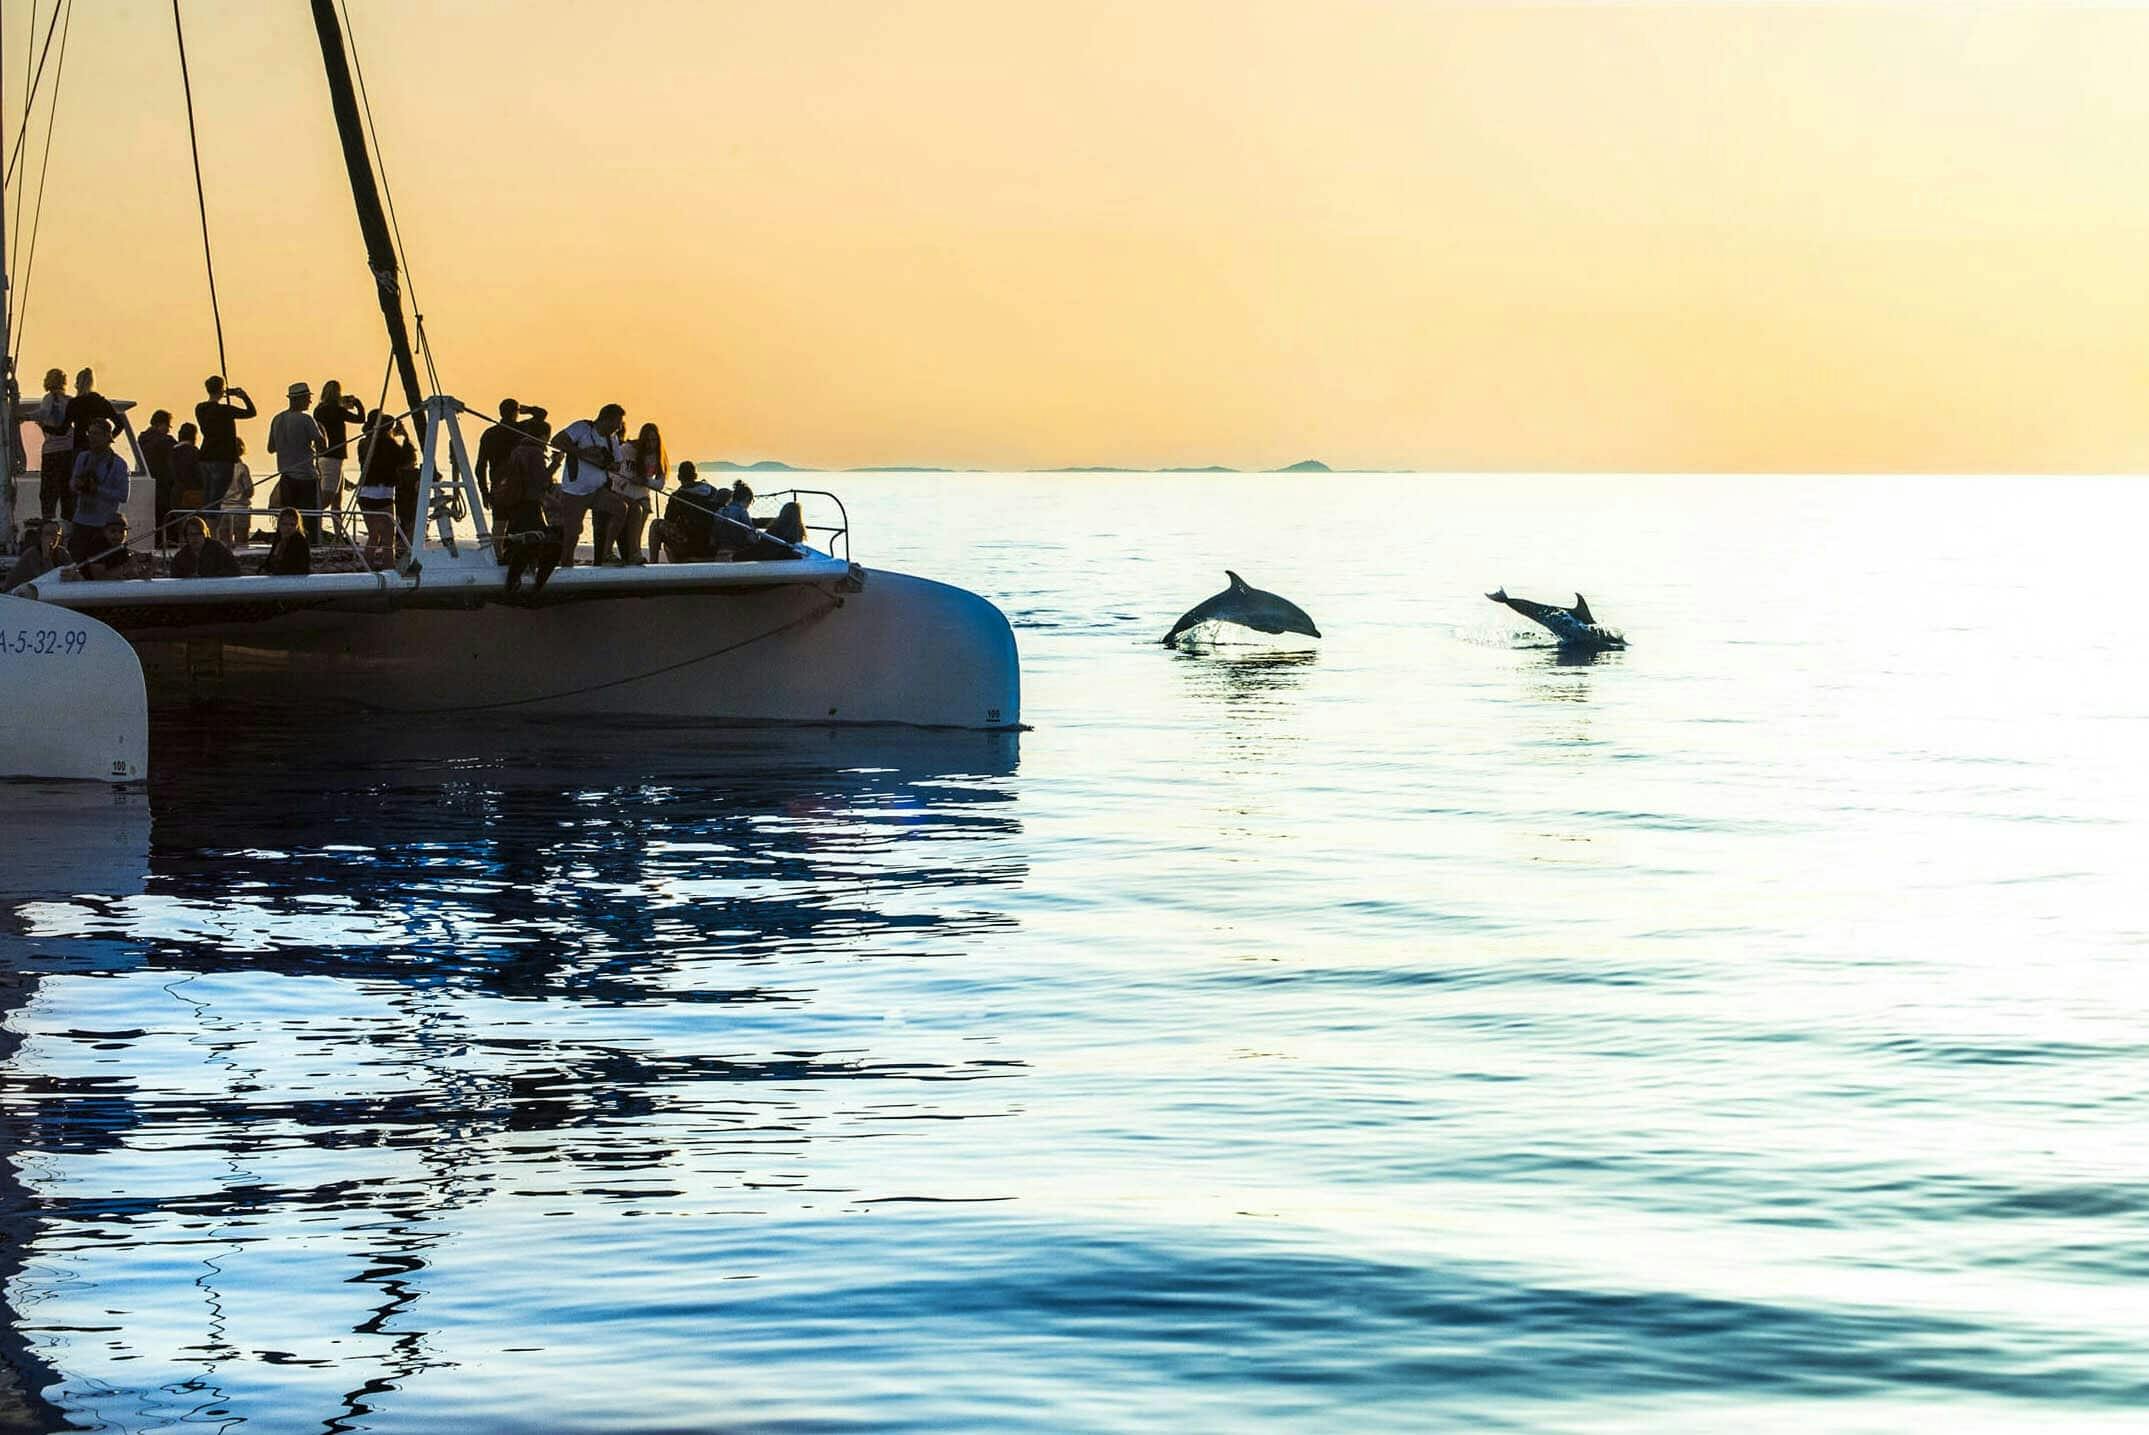 Billet de Croisière d'observation des dauphins à Majorque